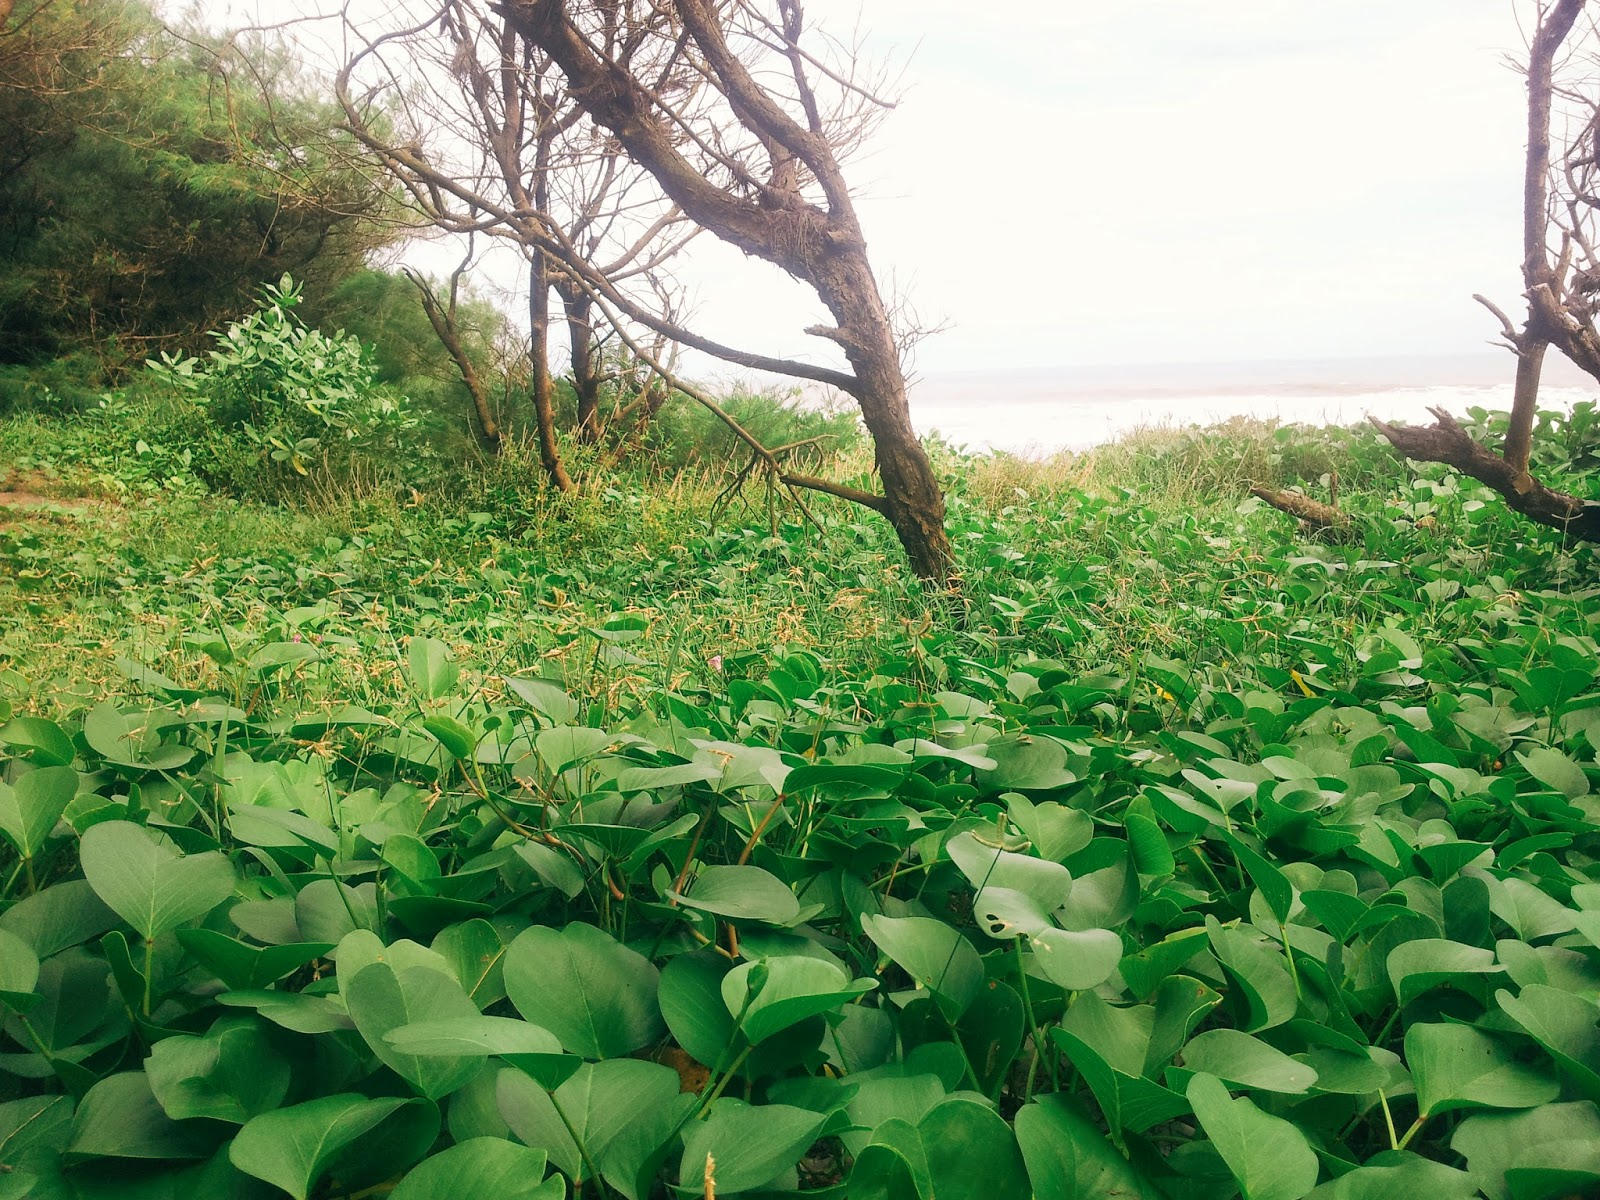 Vegetation in Goa Cemara beach in Bantul, Jogja